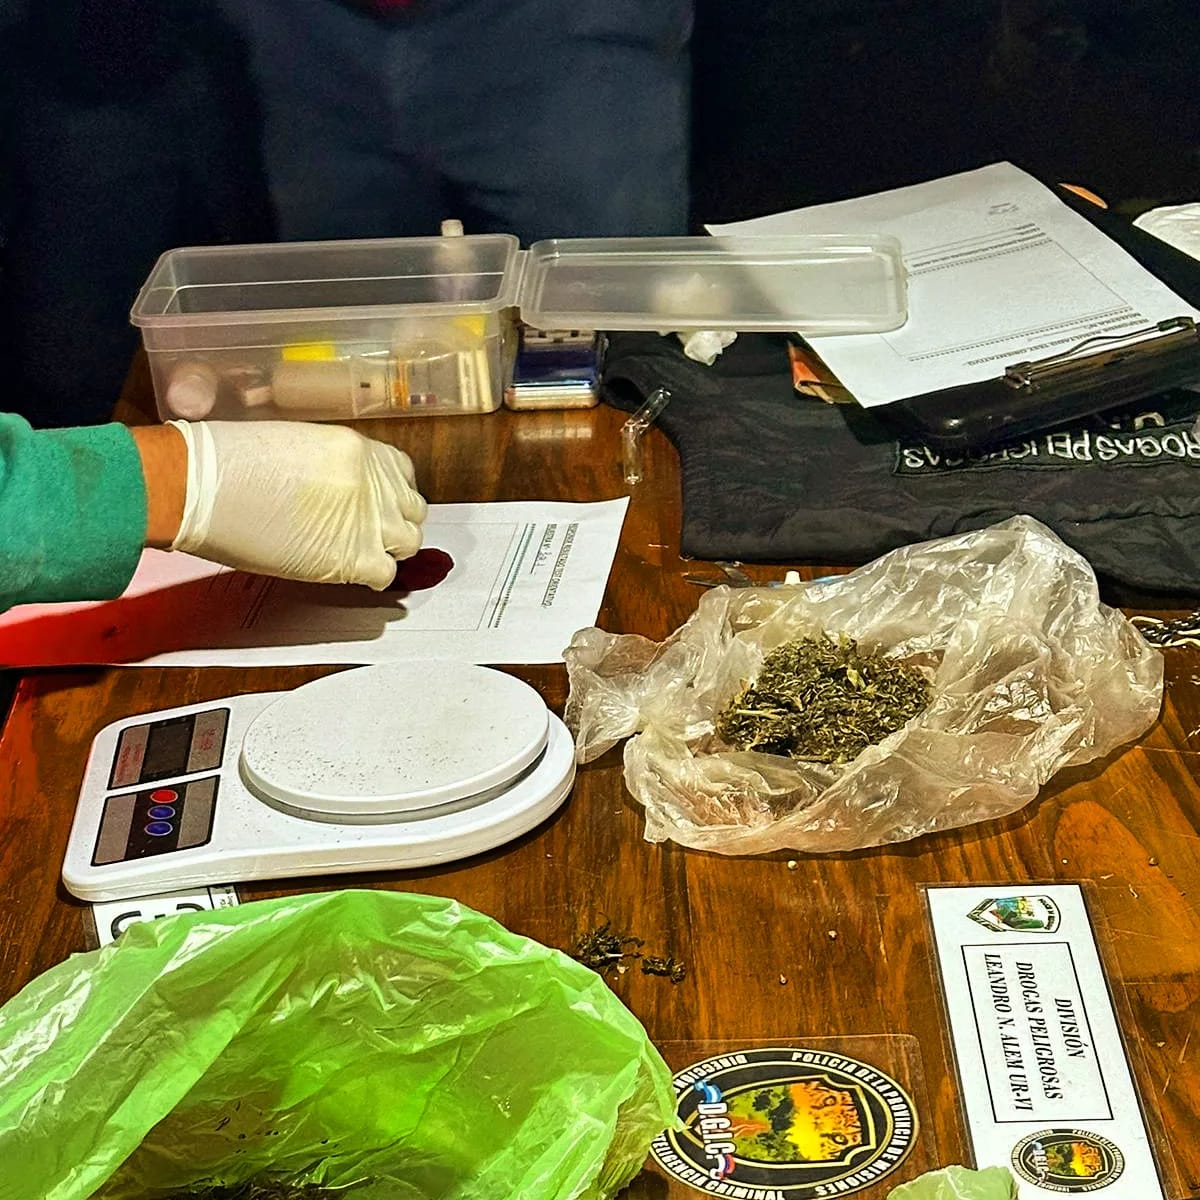 Desbarataron un "narcokiosco" en San Javier y ya son 50 los puntos de venta de drogas desarticulados por la Policía imagen-61